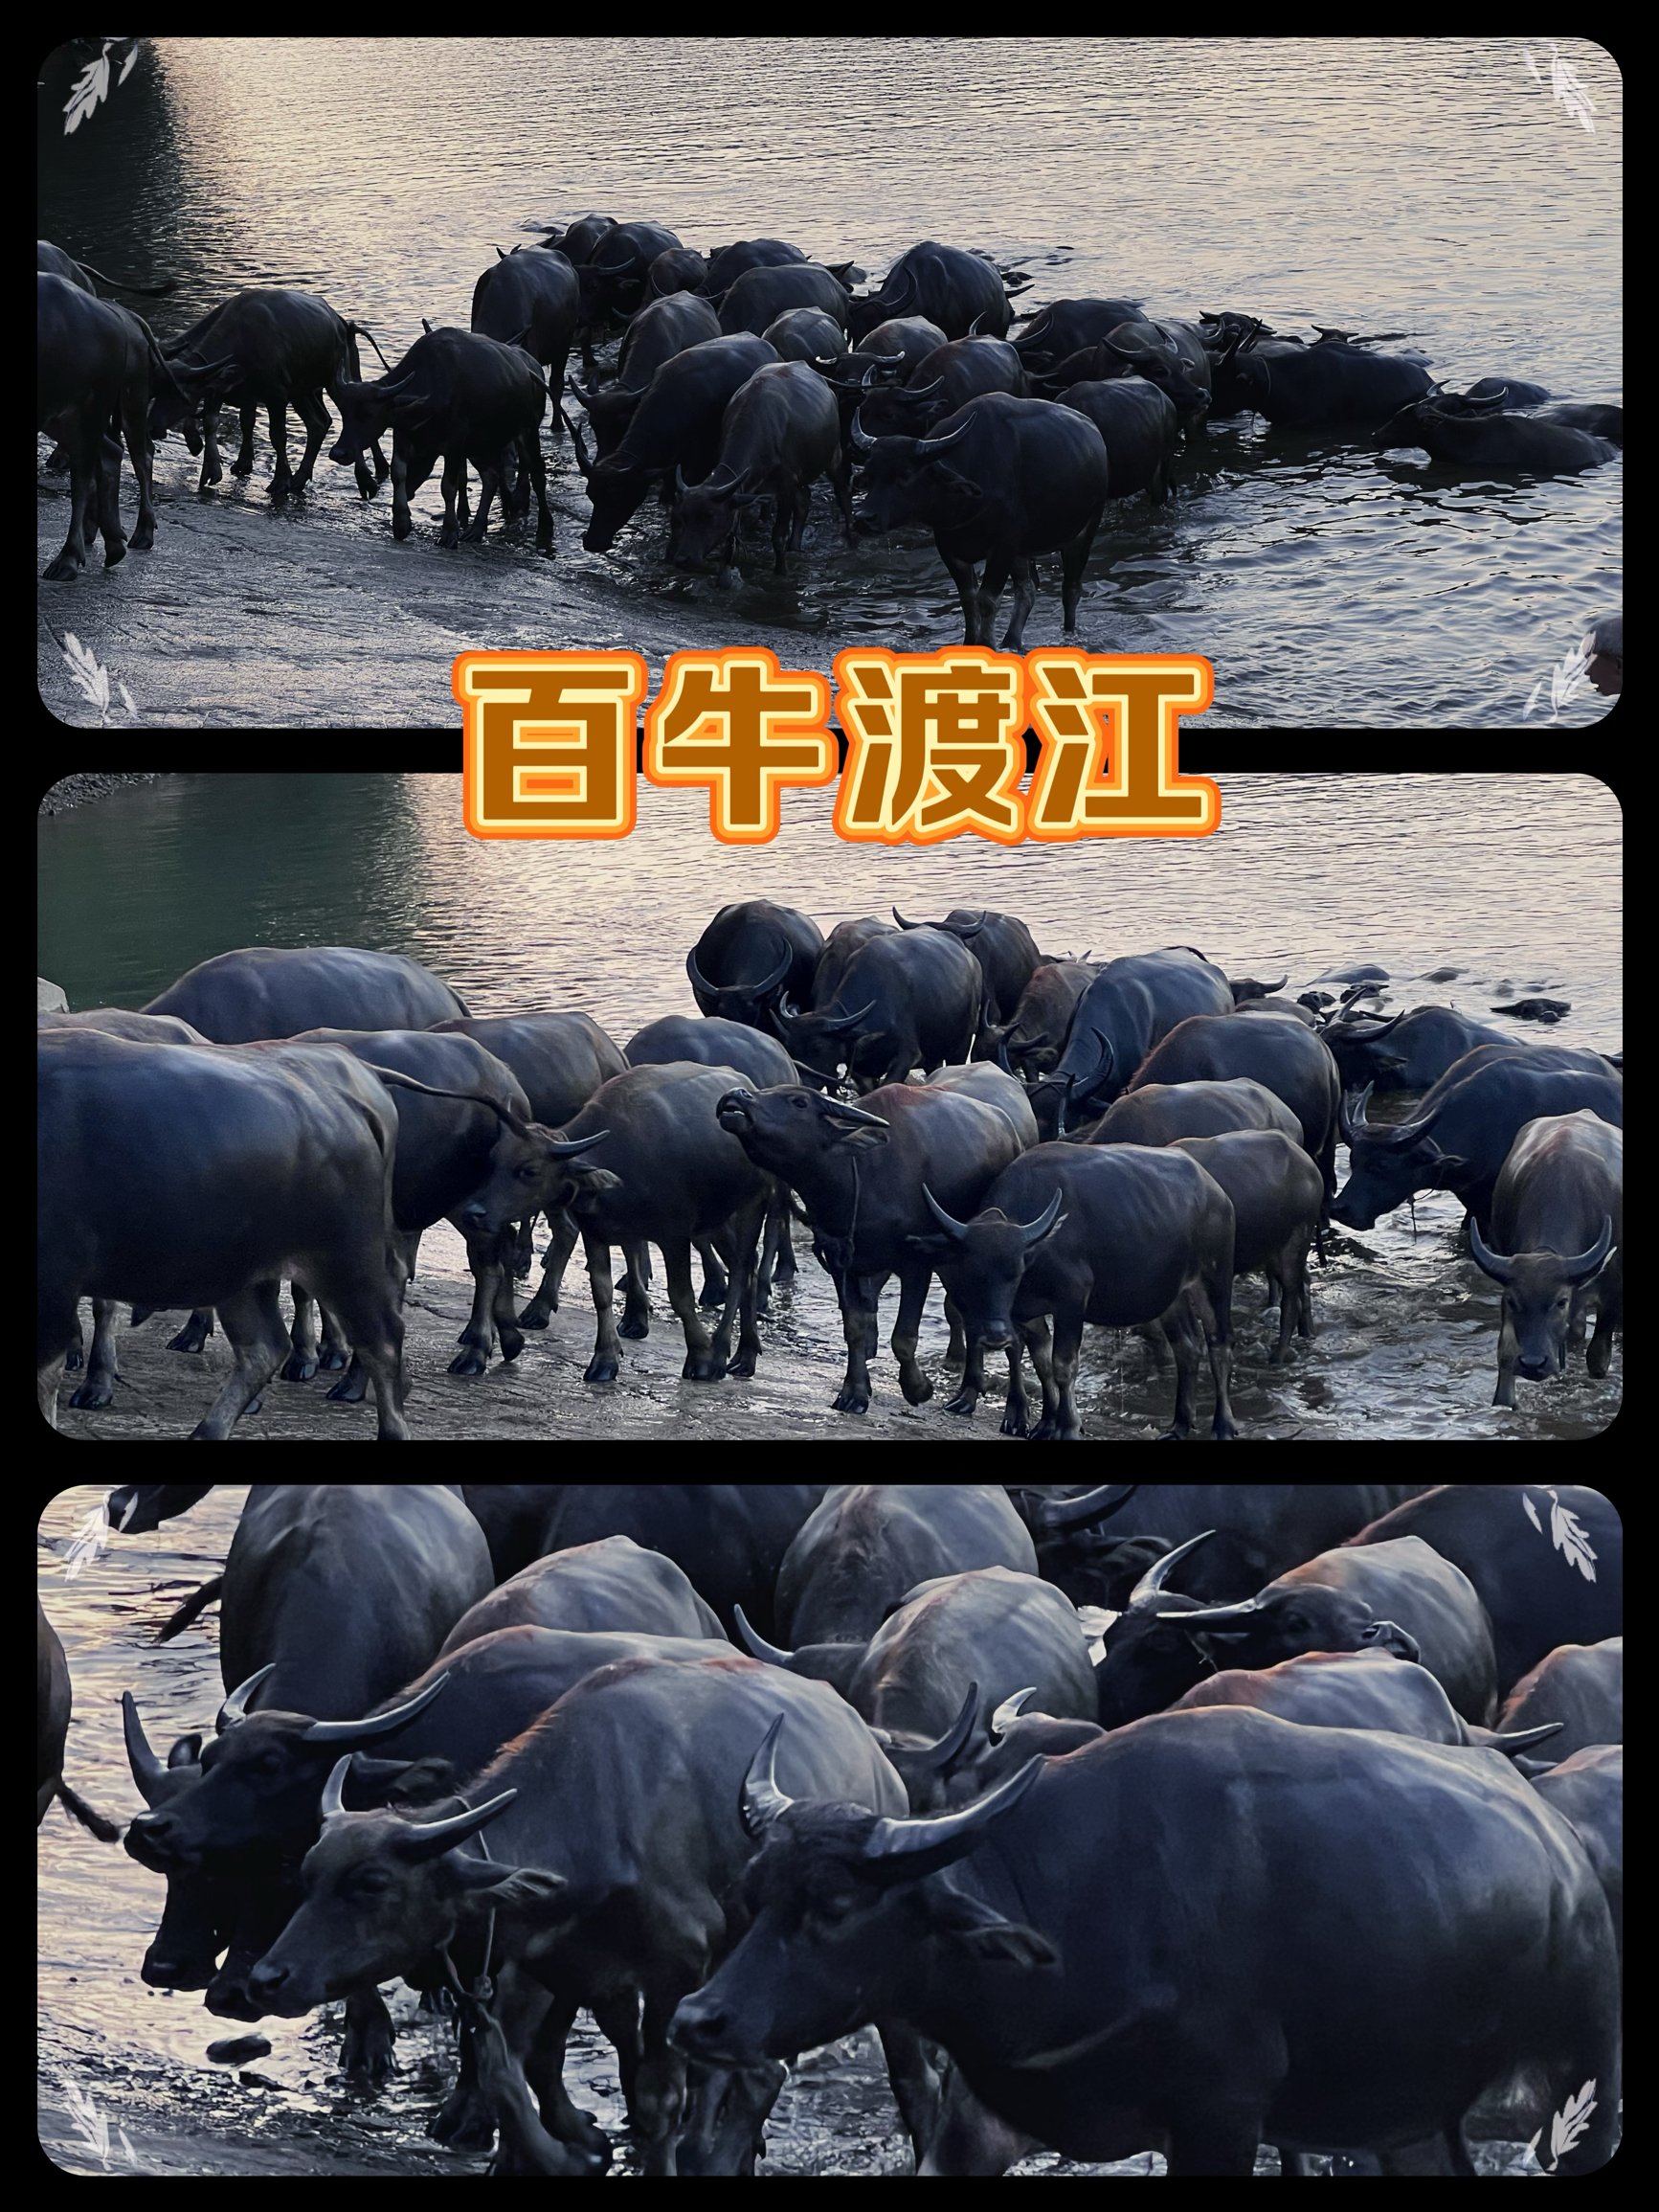 不用去非洲看动物大迁徙，川北小镇的百牛渡江同样震撼